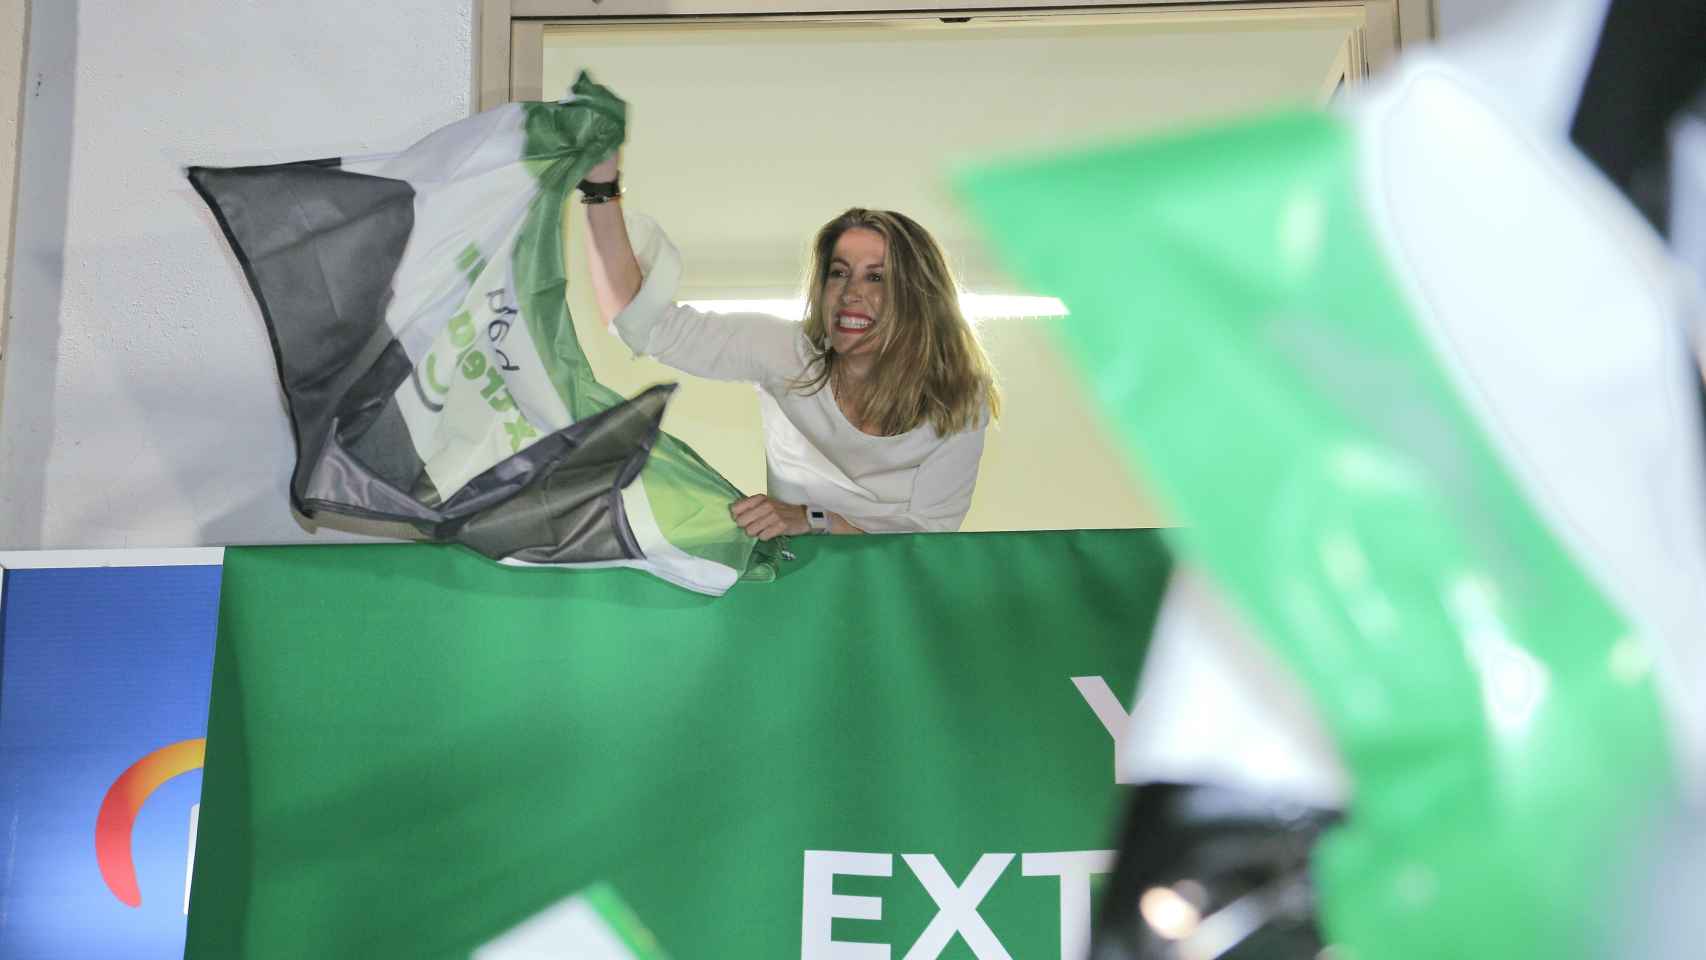 La candidata del PP a la Presidencia de la Junta de Extremadura, María Guardiola